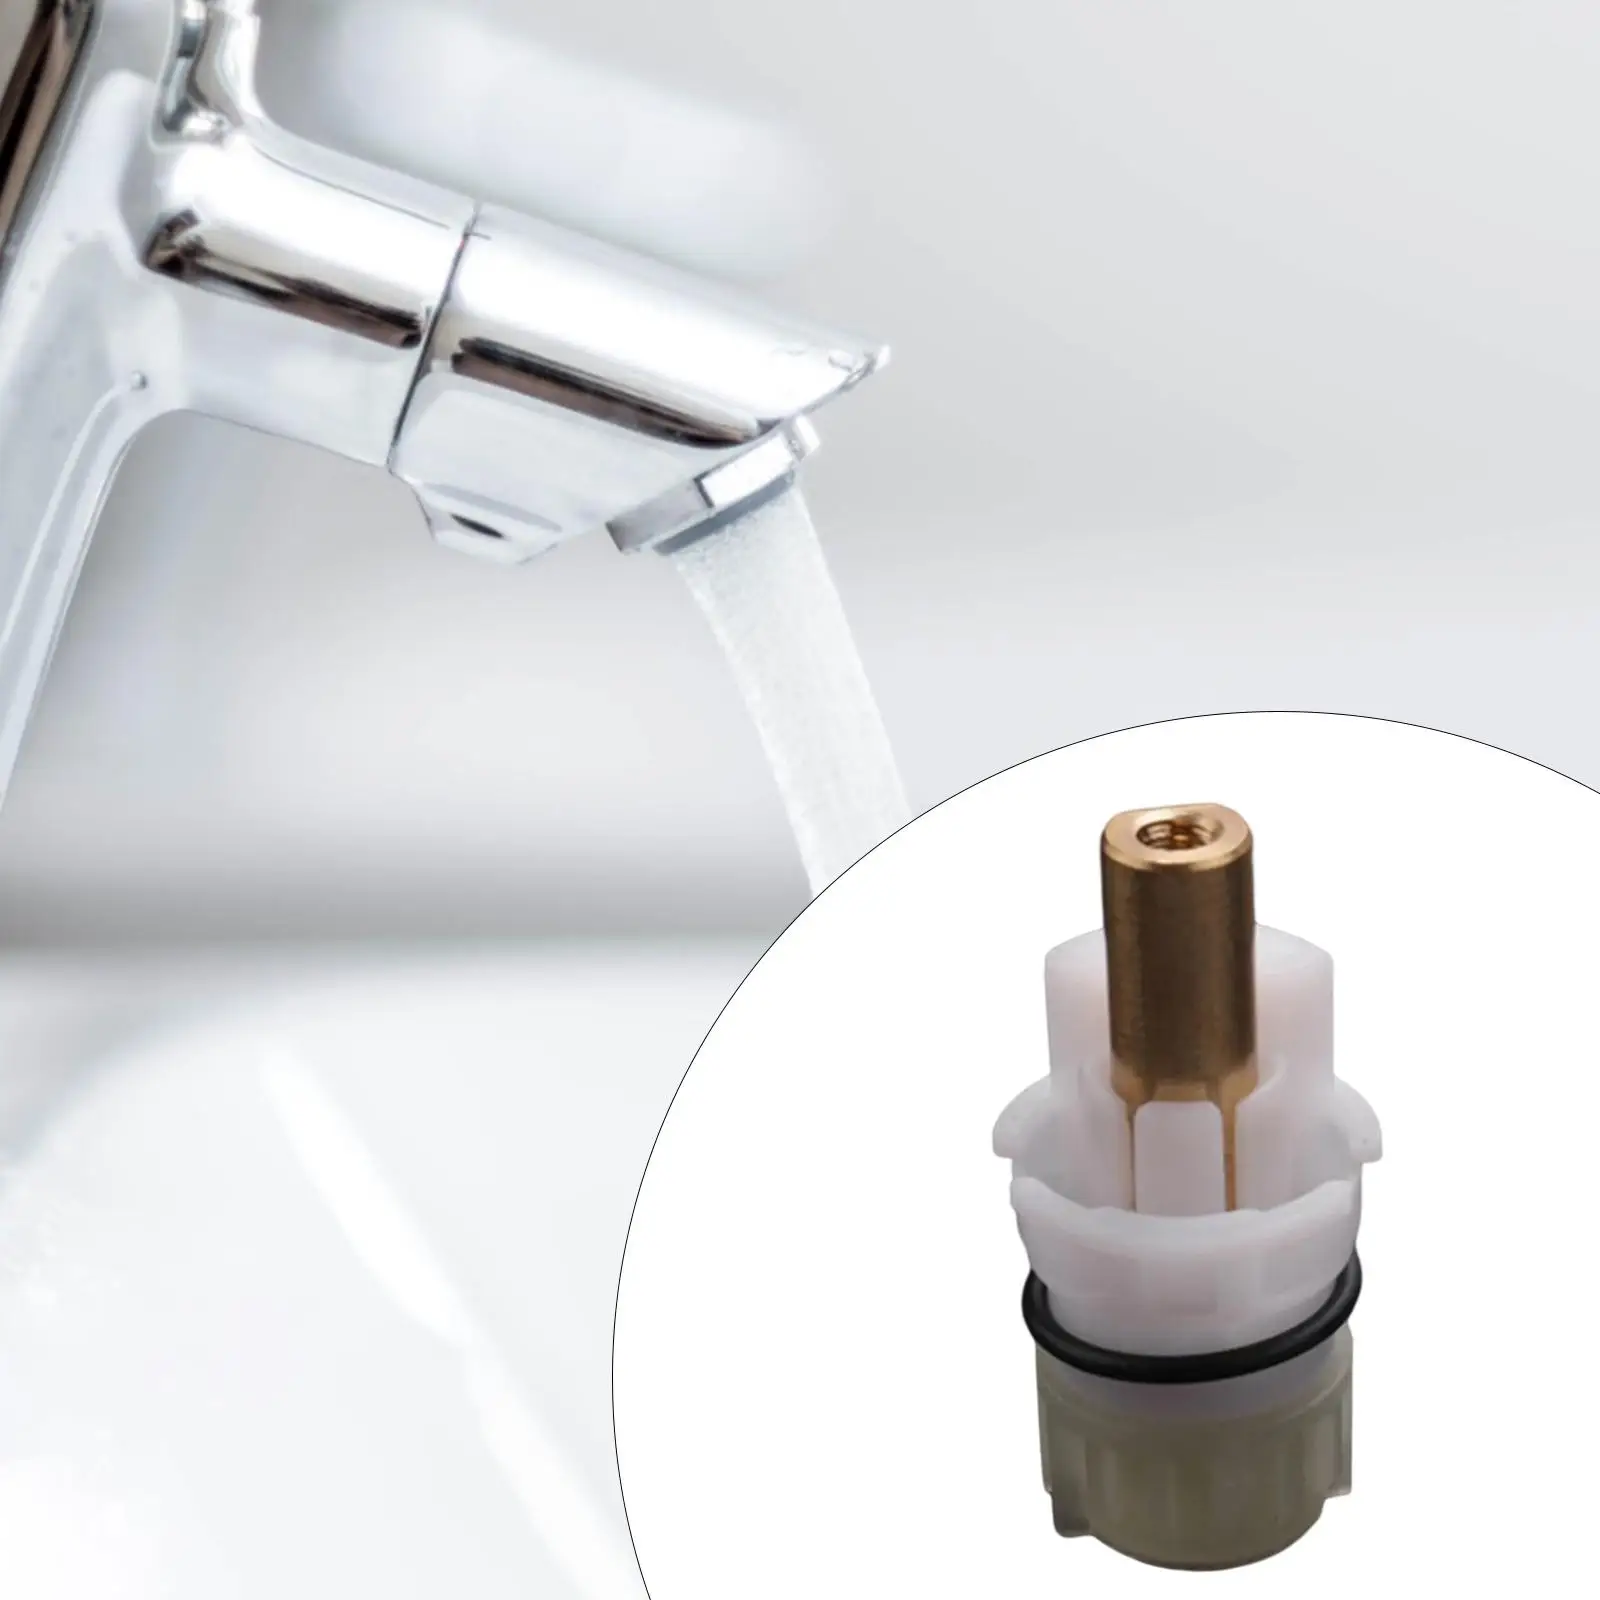 Faucet Stem Replacement RP25513 Faucet Stem Assembly for Delta Faucet Kit